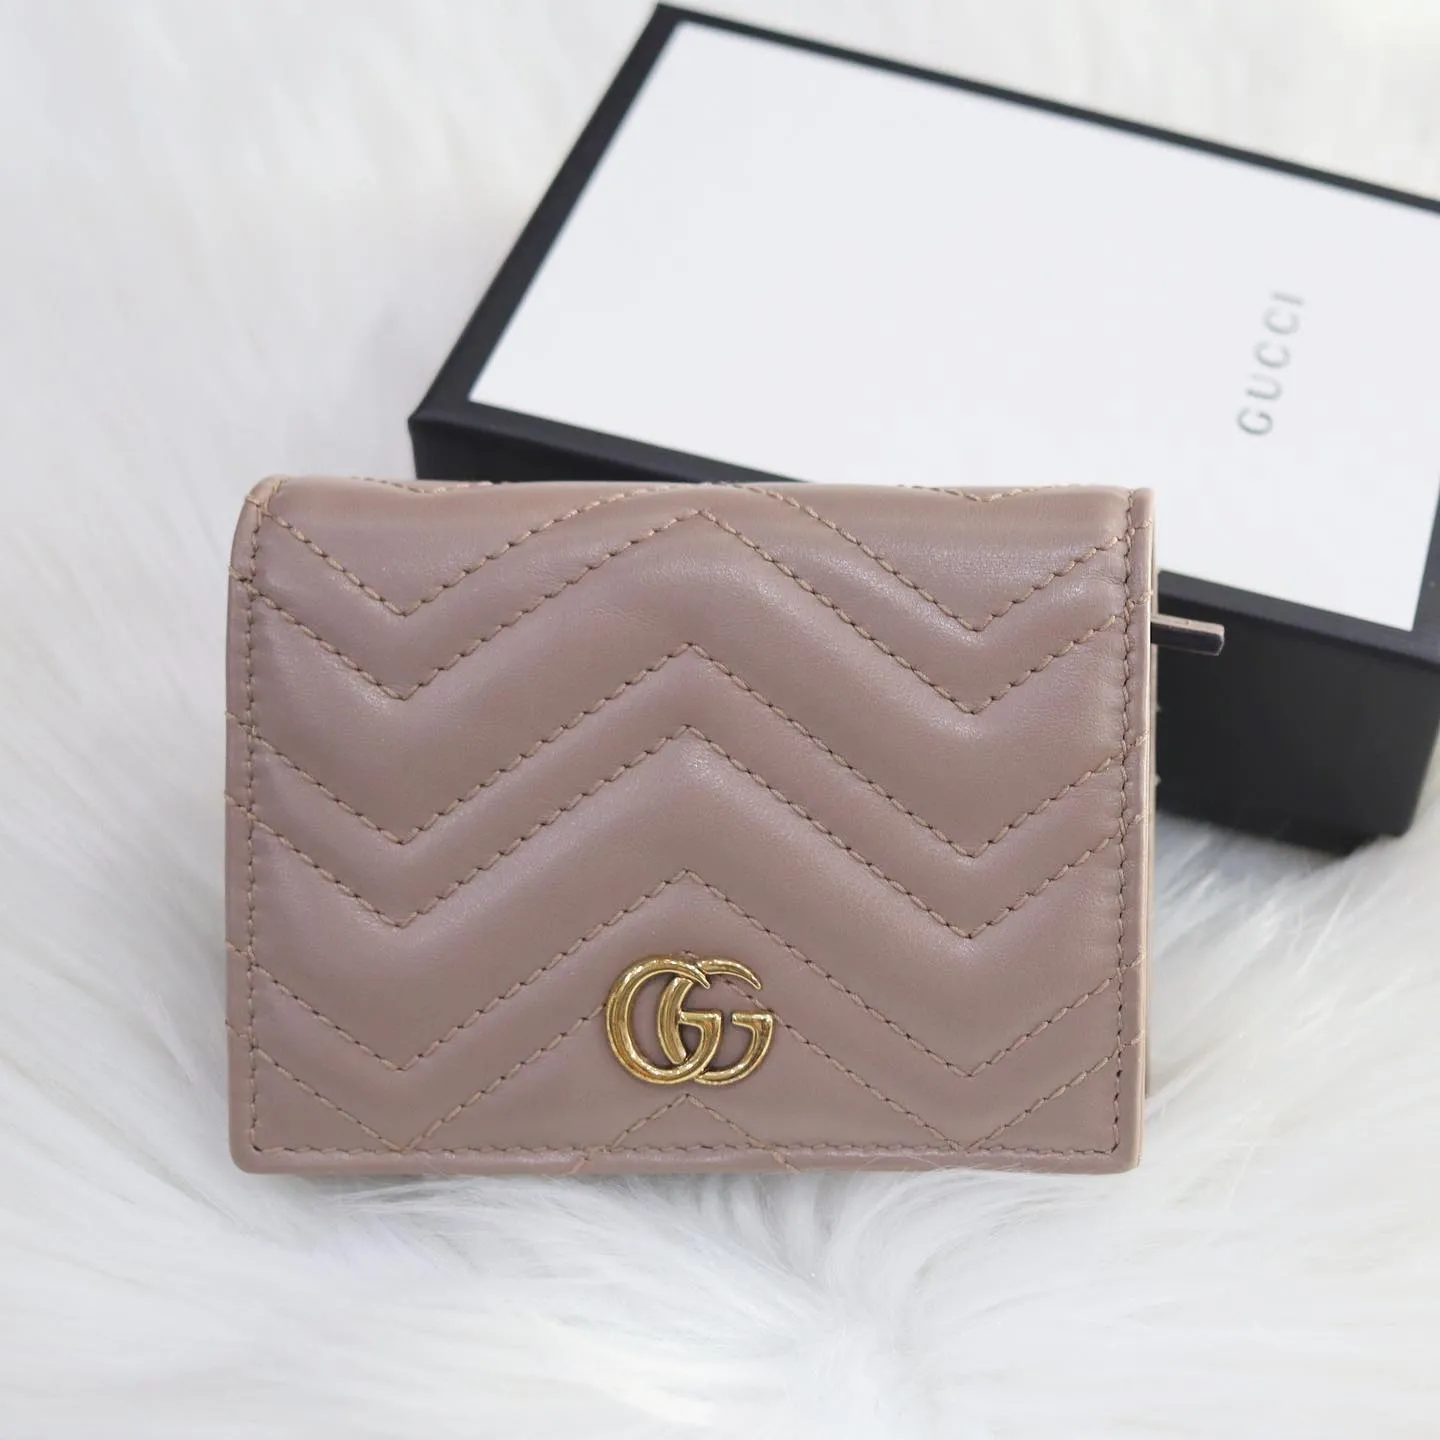 Mua Ví Gucci Marmont Card Case Wallet Màu Hồng Nude - Gucci - Mua tại Vua  Hàng Hiệu h027369